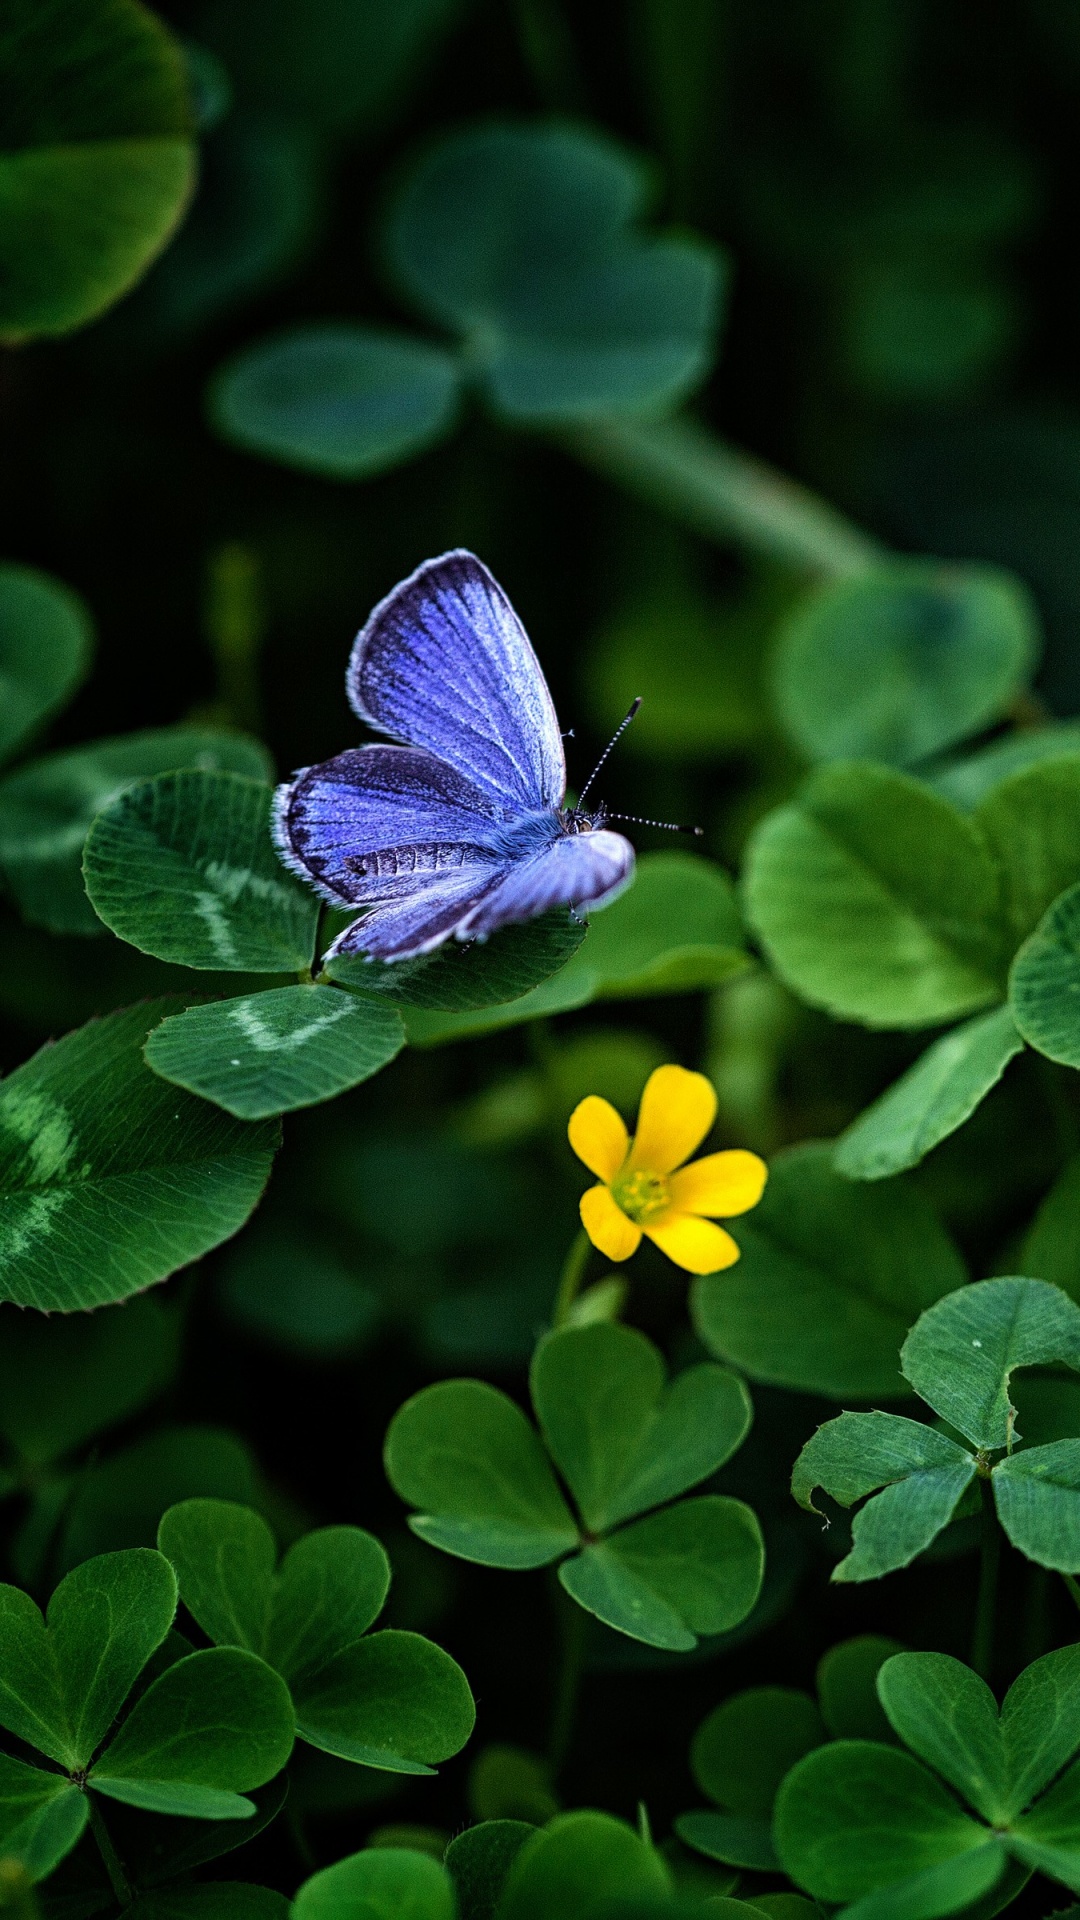 Mariposa Azul Posado Sobre Flor Amarilla en Fotografía Cercana Durante el Día. Wallpaper in 1080x1920 Resolution